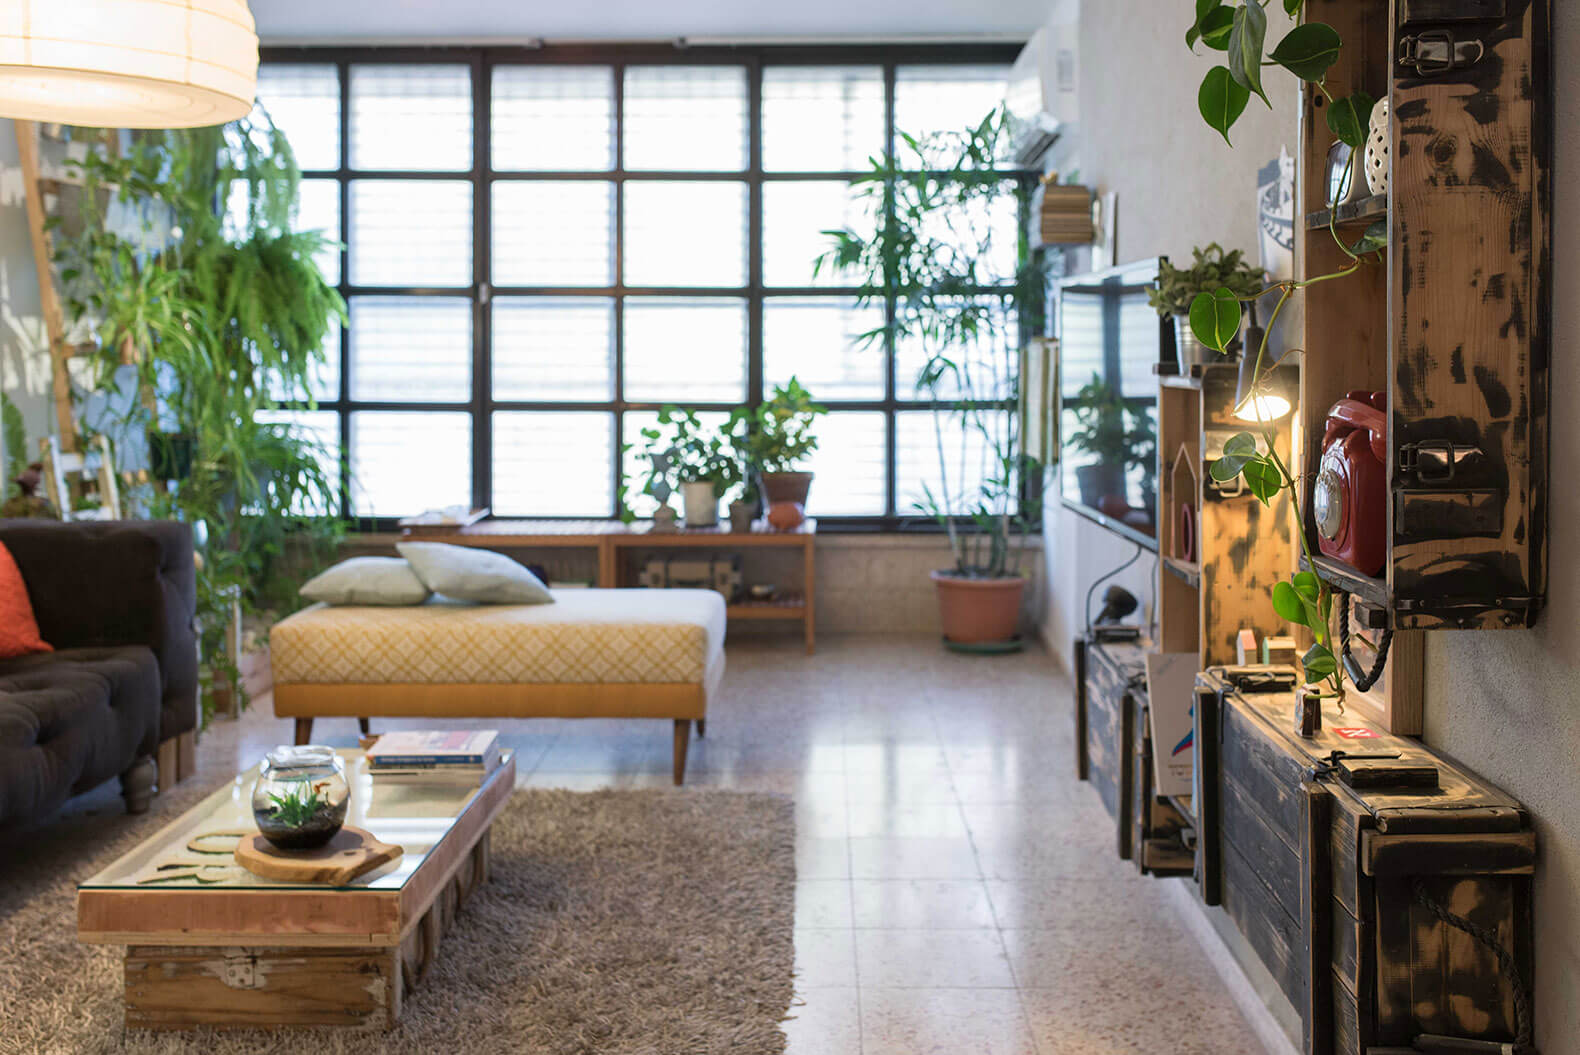 Thiết kế nội thất chung cư đẹp theo phong cách yêu thiên nhiên 